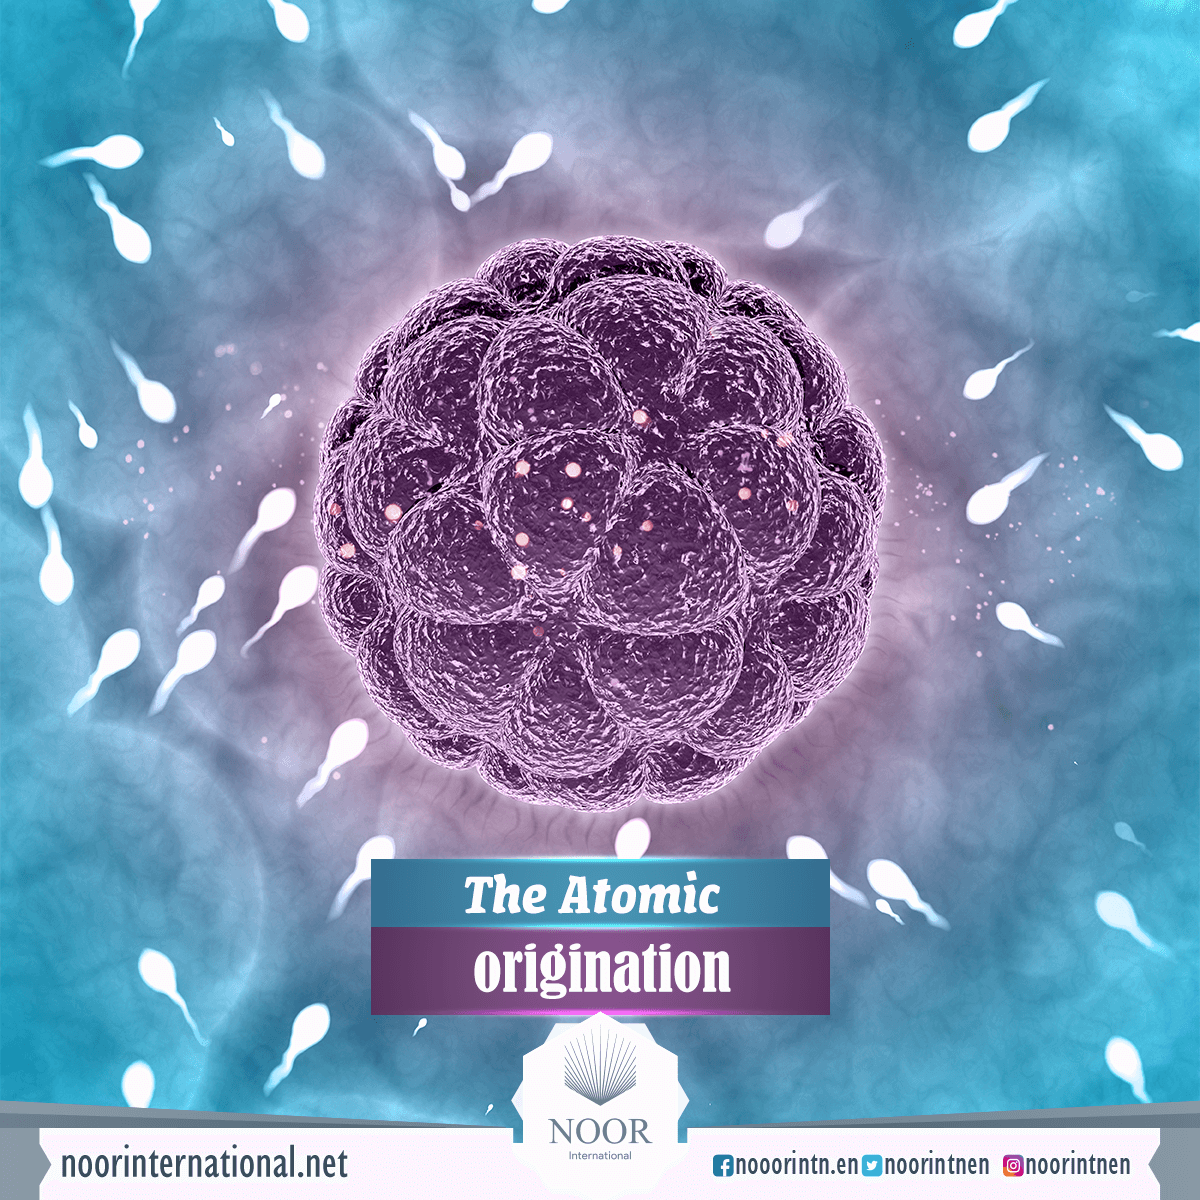 The Atomic origination